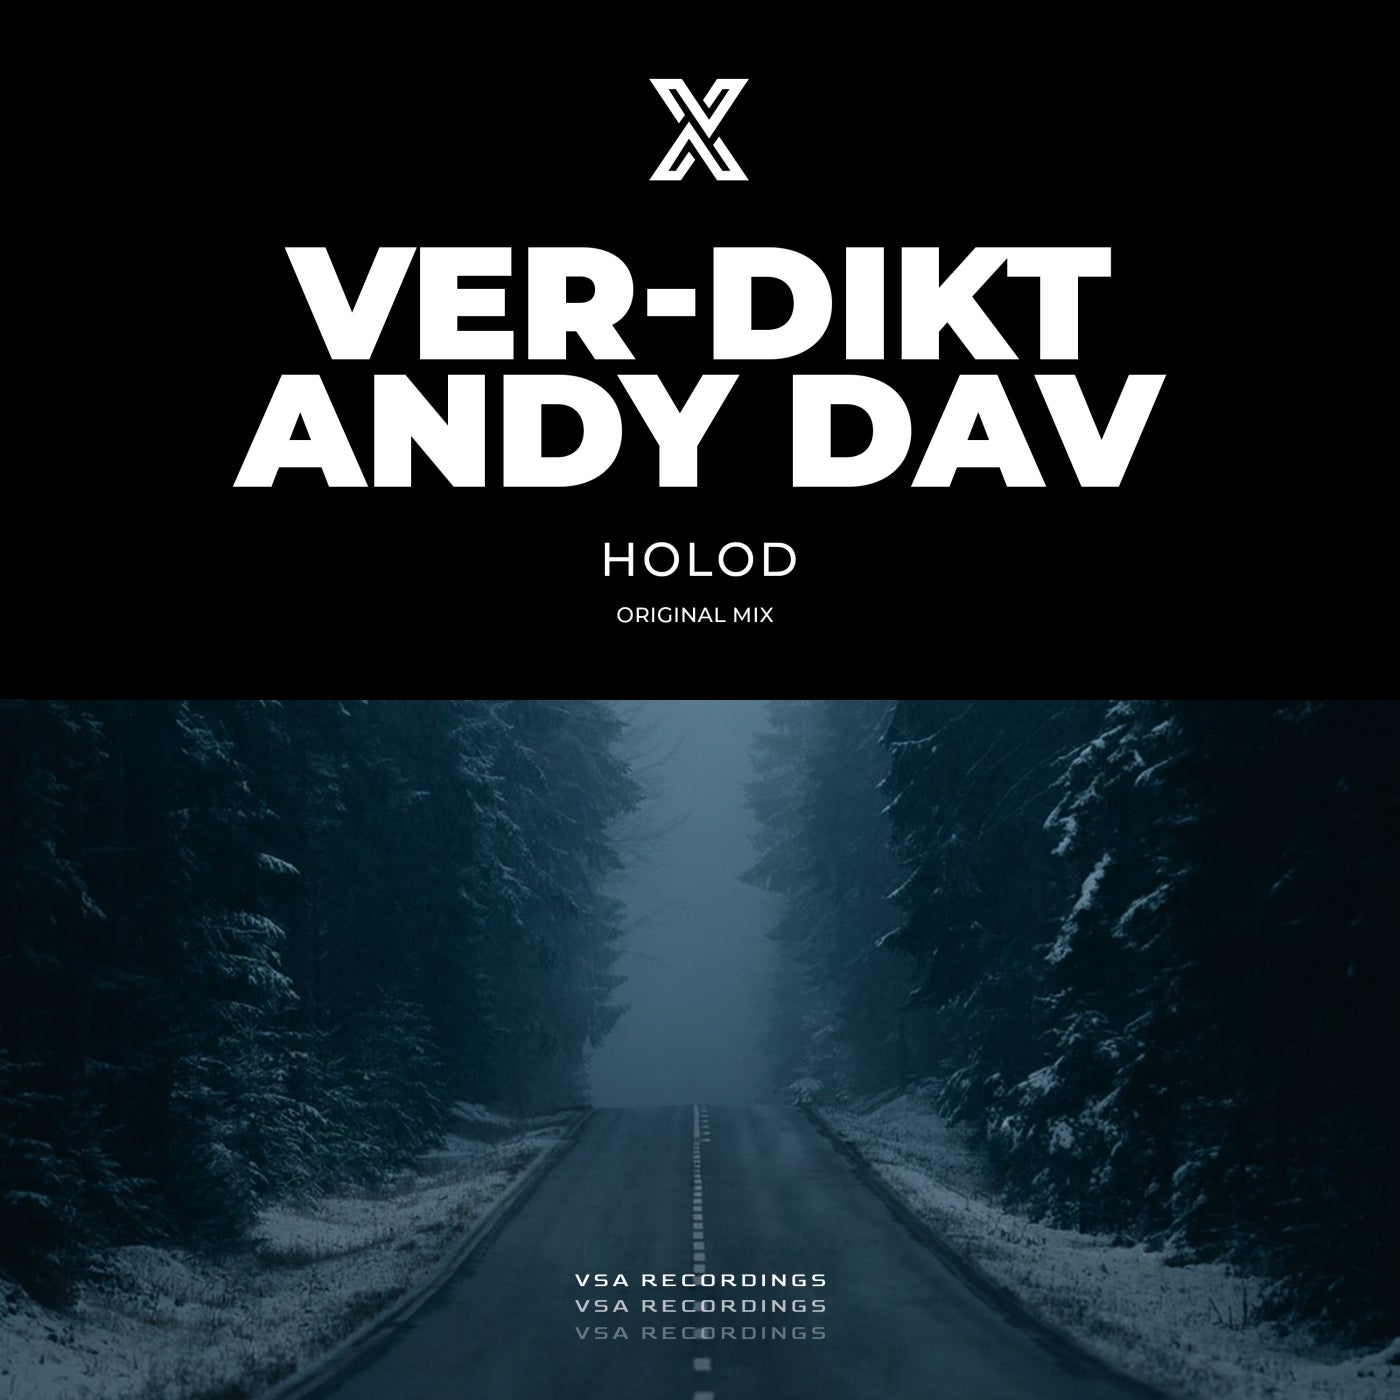 Ver-dikt, Andy Dav - Holod (Original Mix)